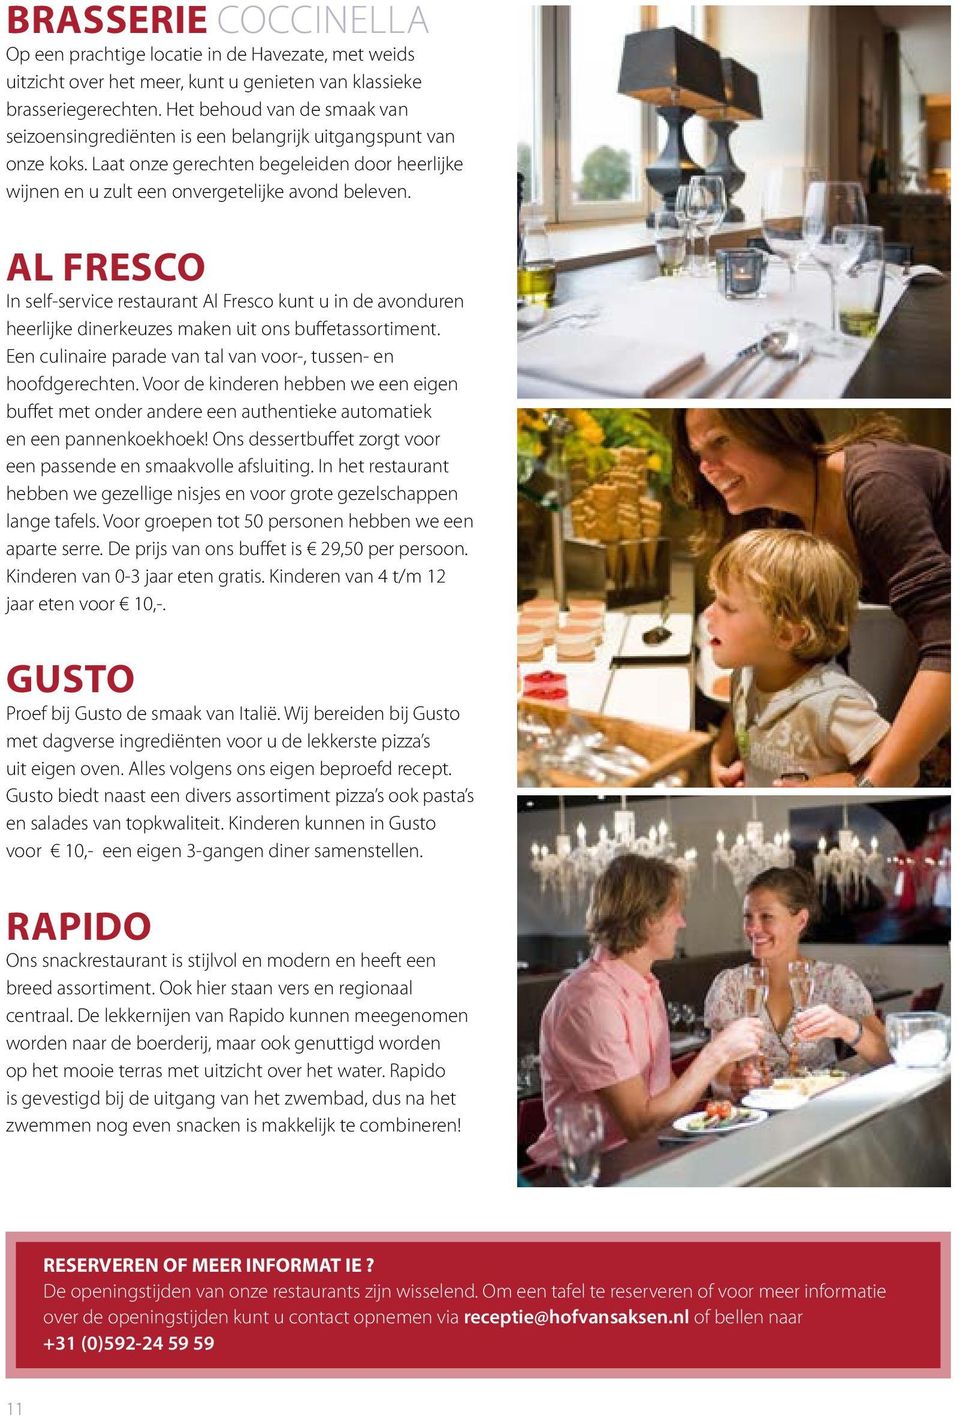 AL FRESCO In self-service restaurant Al Fresco kunt u in de avonduren heerlijke dinerkeuzes maken uit ons buffetassortiment. Een culinaire parade van tal van voor-, tussen- en hoofdgerechten.